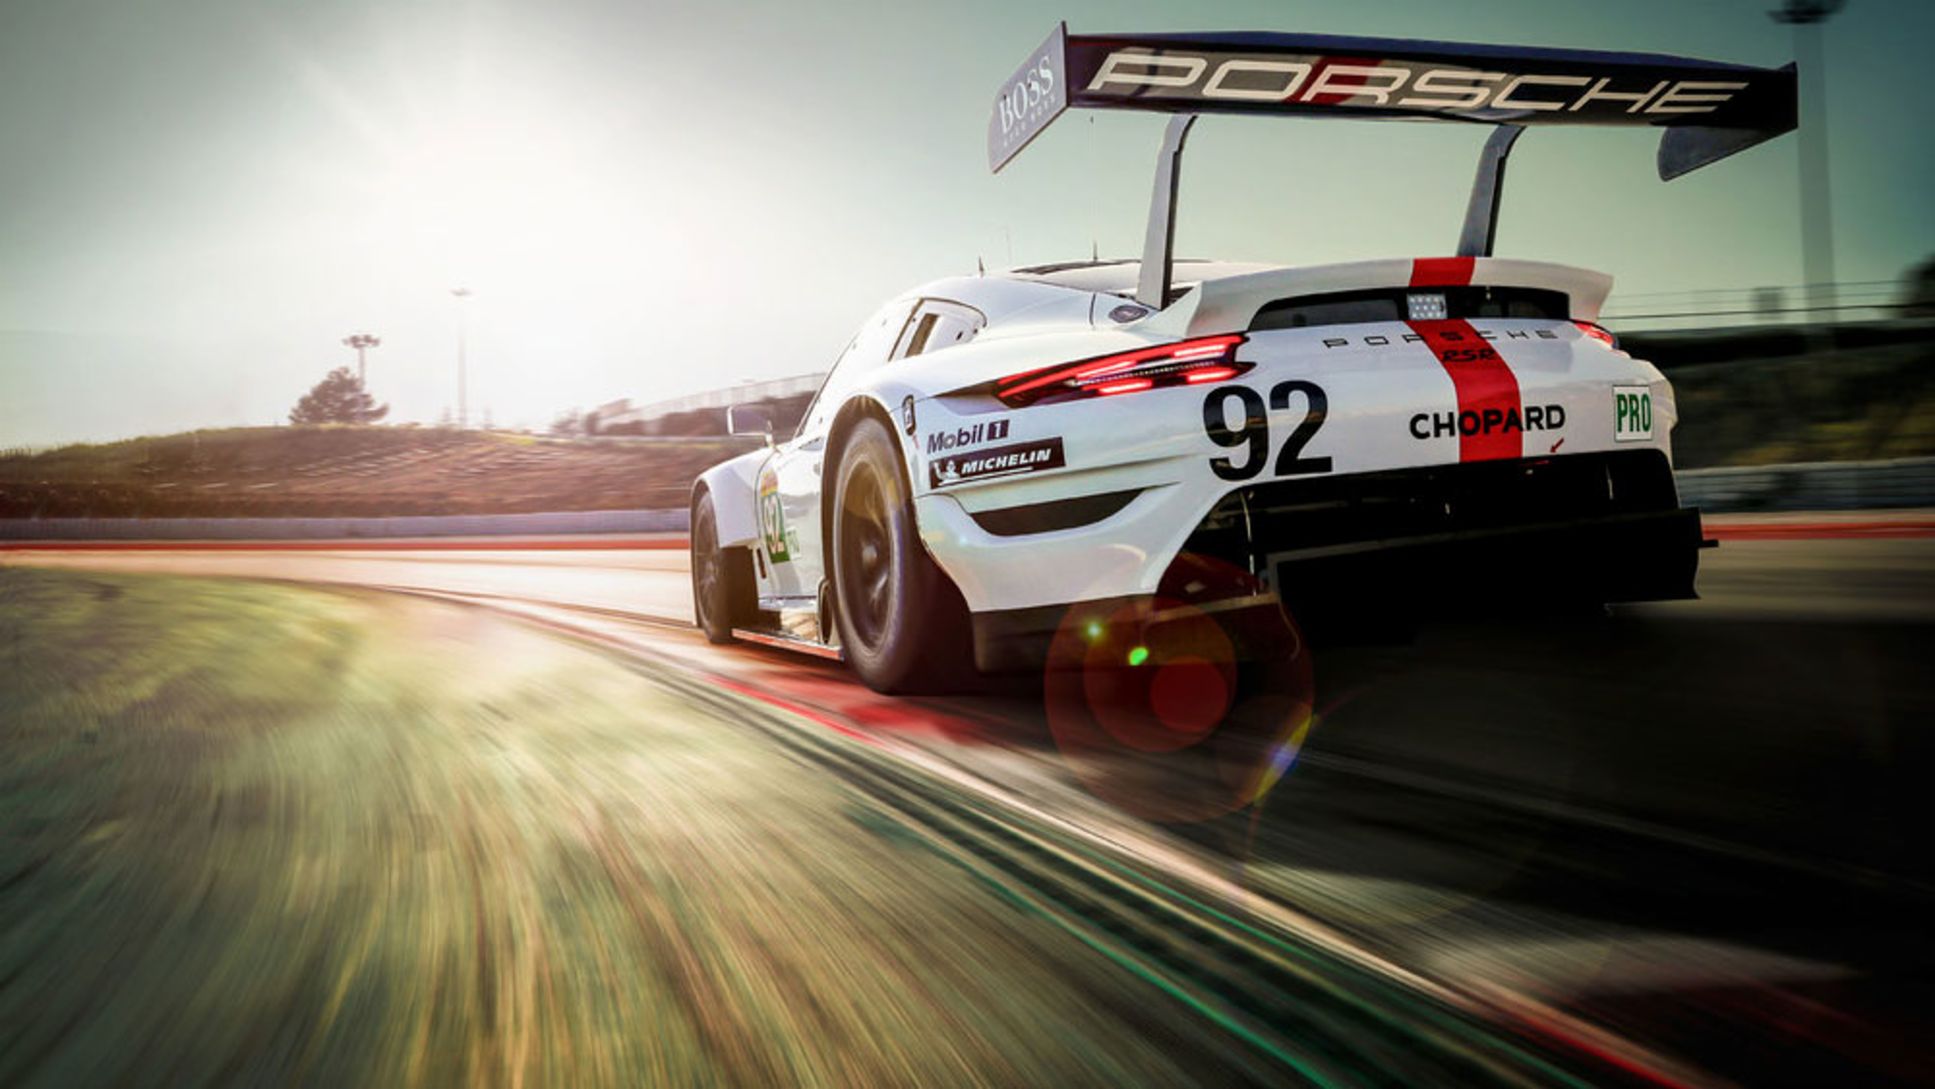 Equipo Porsche GT (92), 911 RSR, FIA WEC, prólogo, Barcelona, 2019, Porsche AG